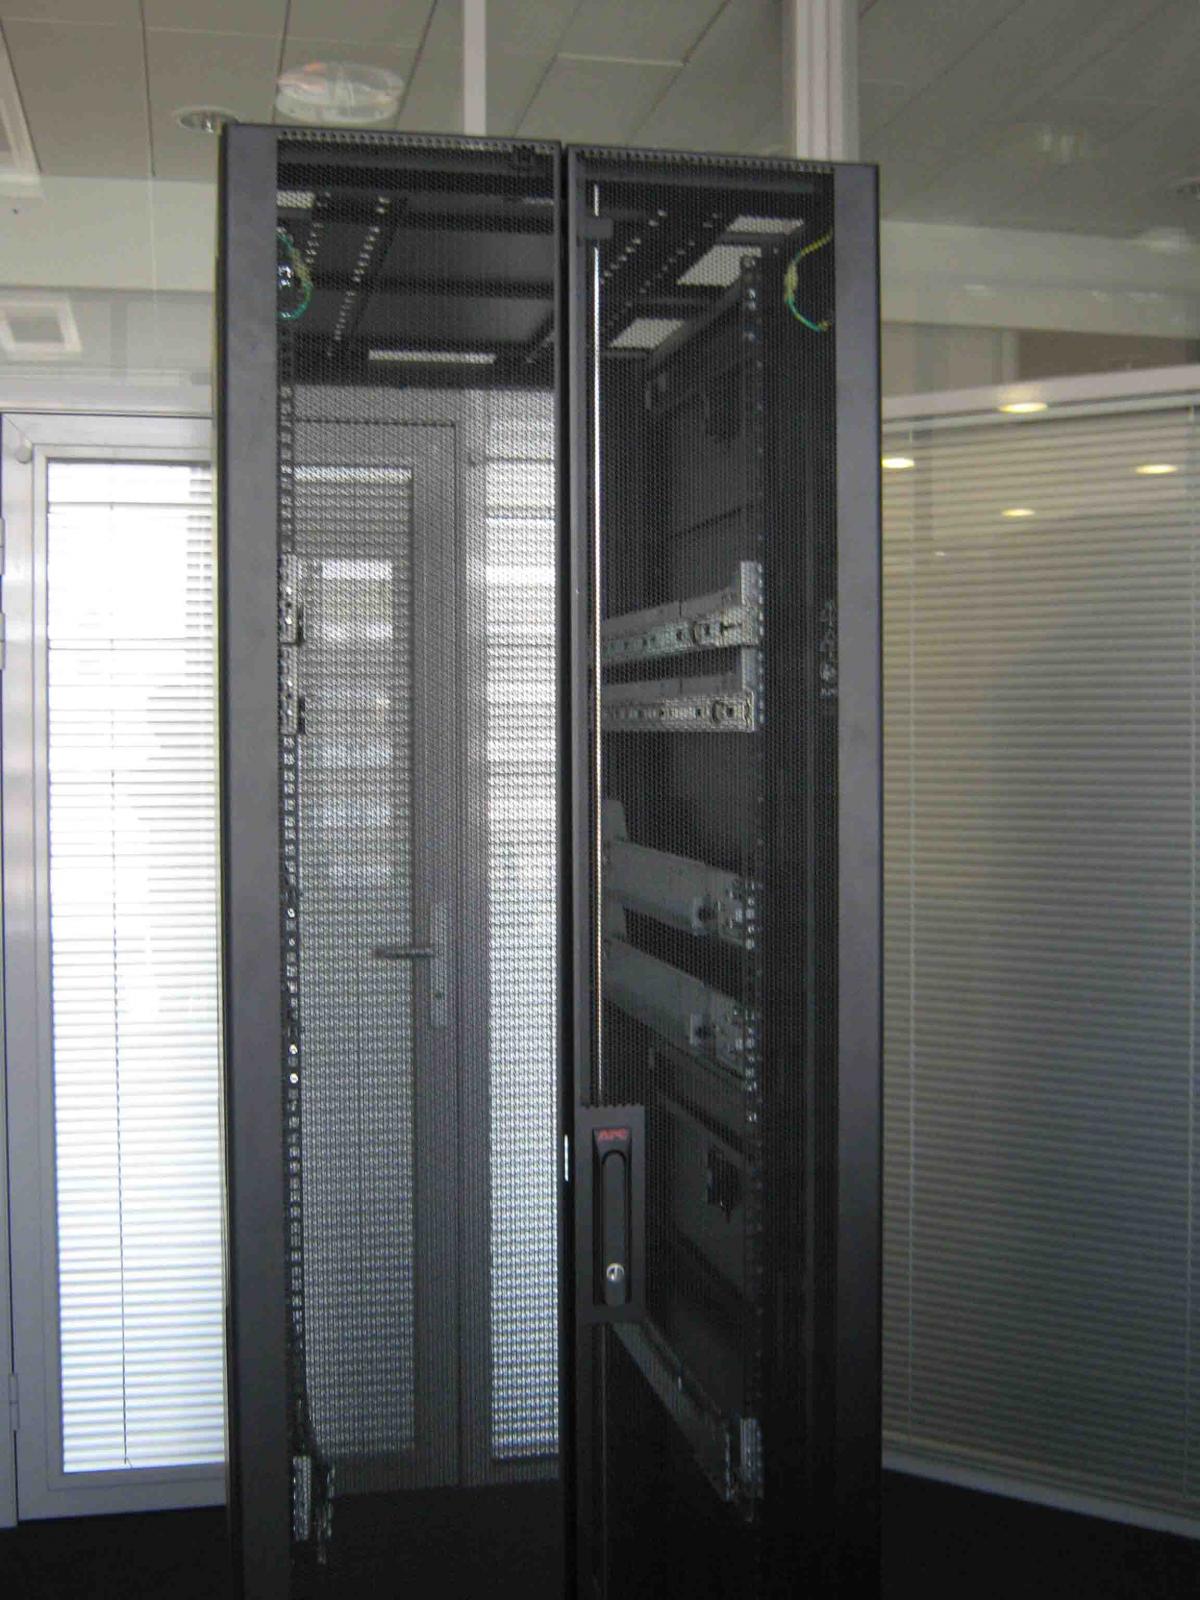 серверный шкаф apc ar3100